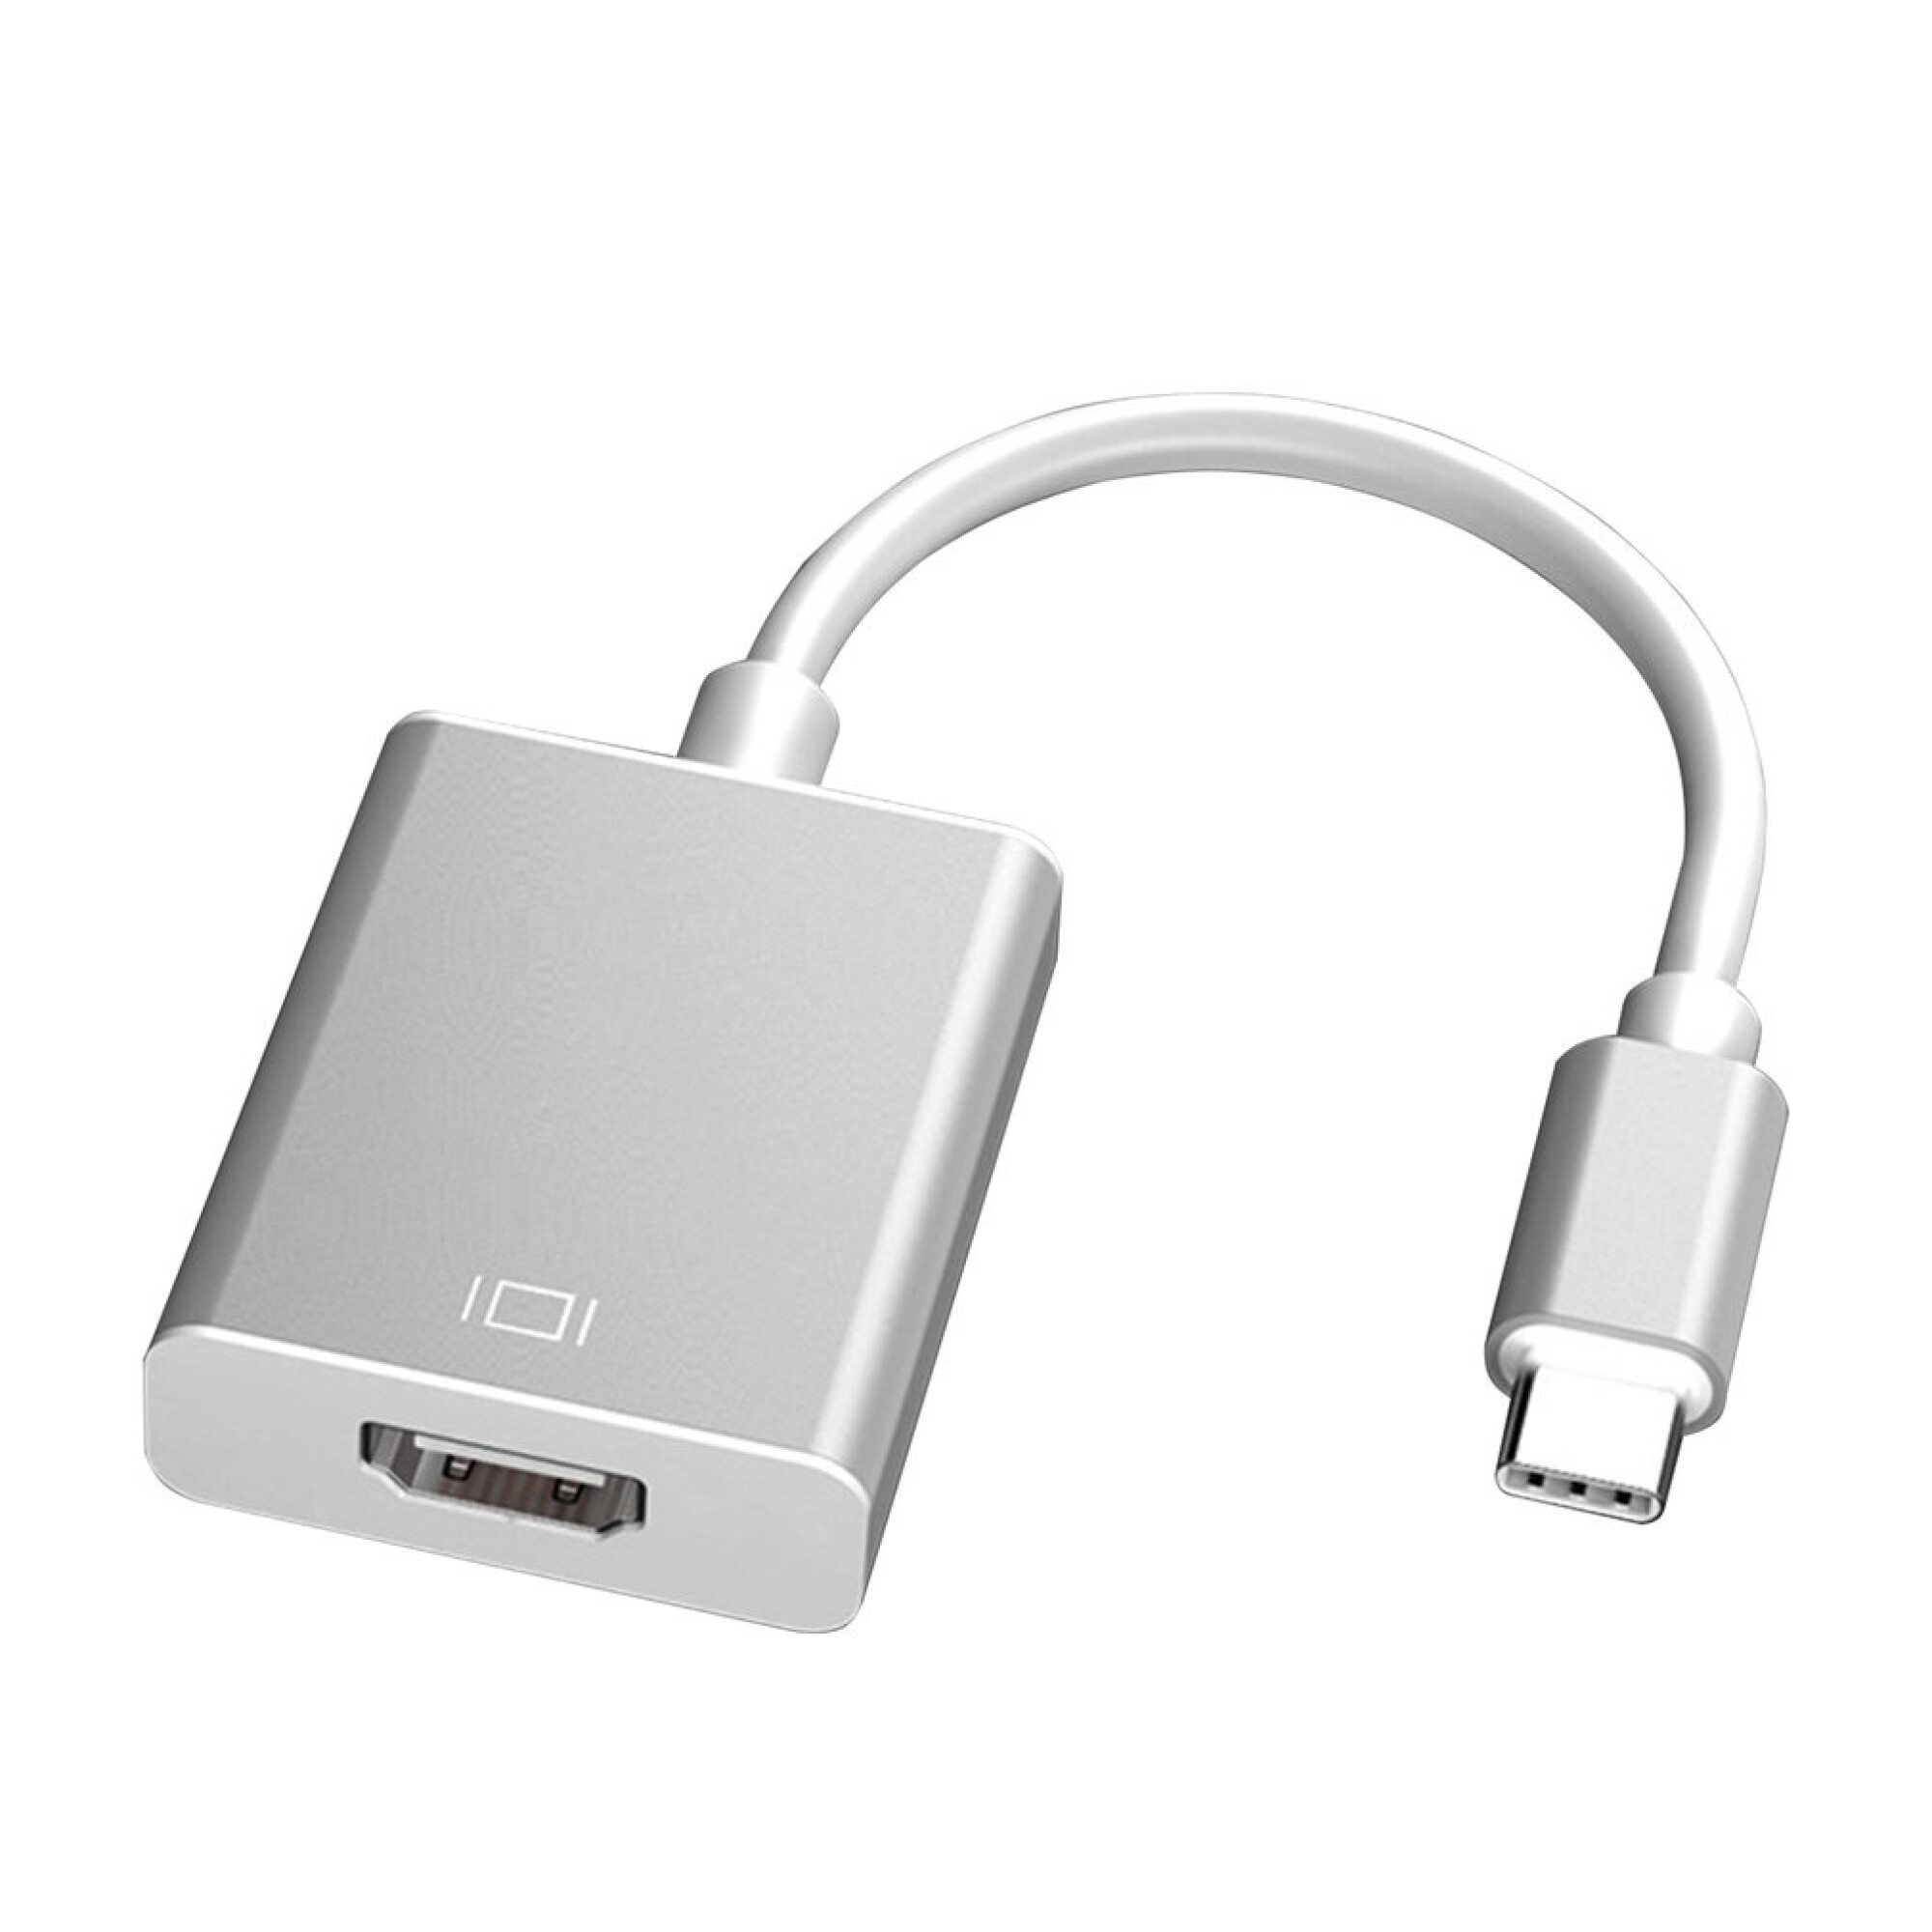 Convertidor TIPO C a HDMI